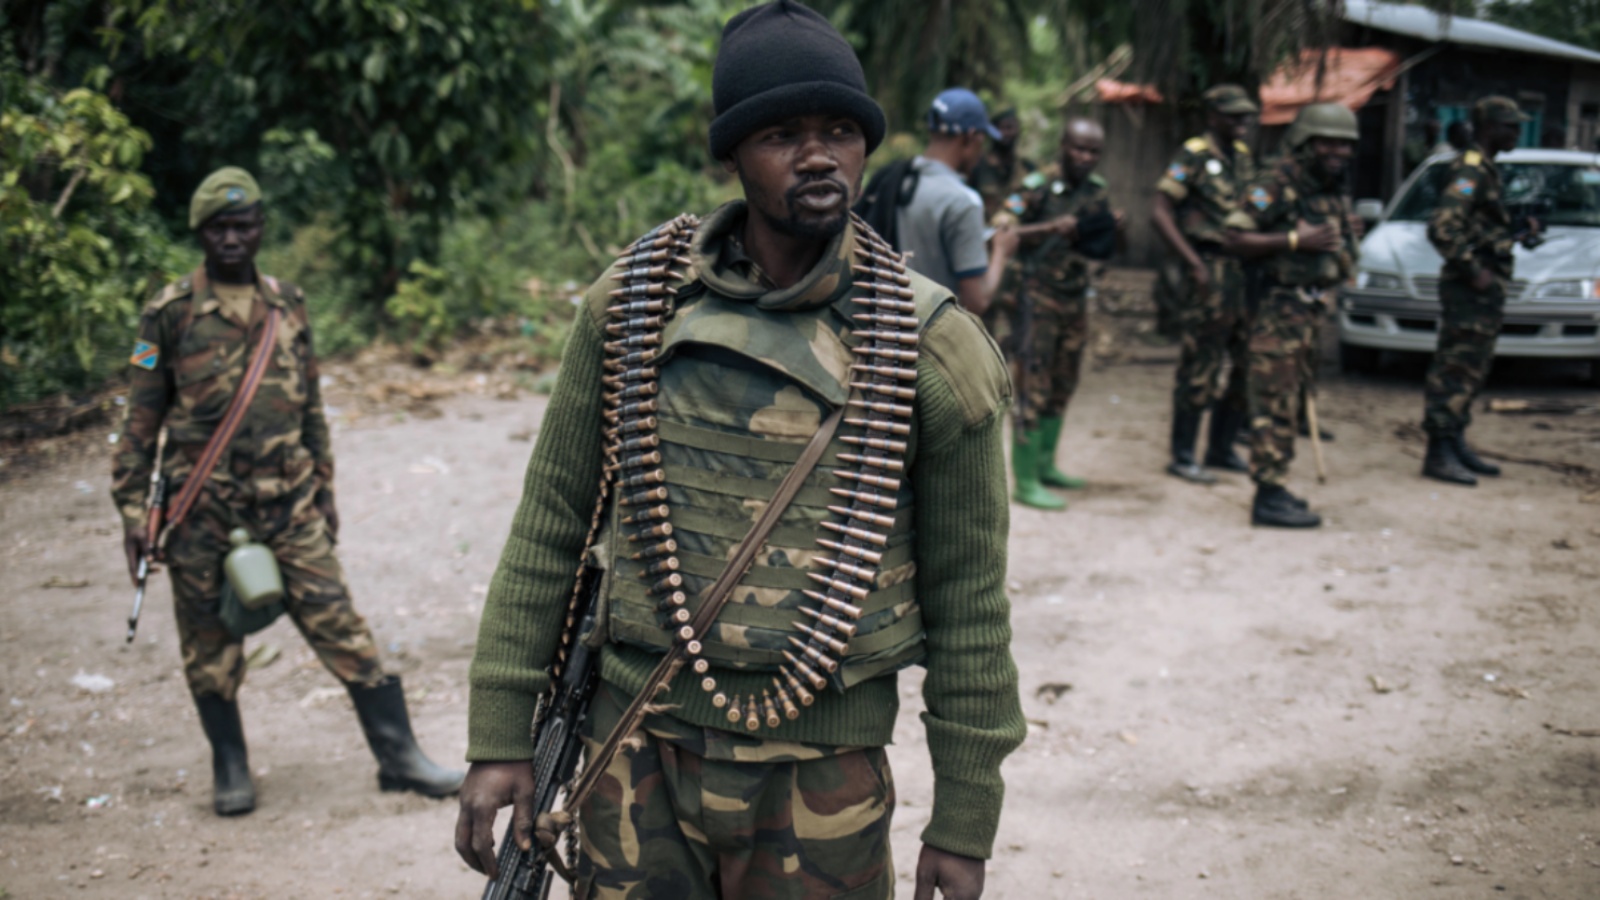 جندي من جمهورية الكونغو الديمقراطية في دورية في قرية منزالاحو، بالقرب من بيني، 18 فبراير 2020، في أعقاب هجوم مزعوم لعناصر من جماعة الحلفاء الديمقراطية المتمردة.